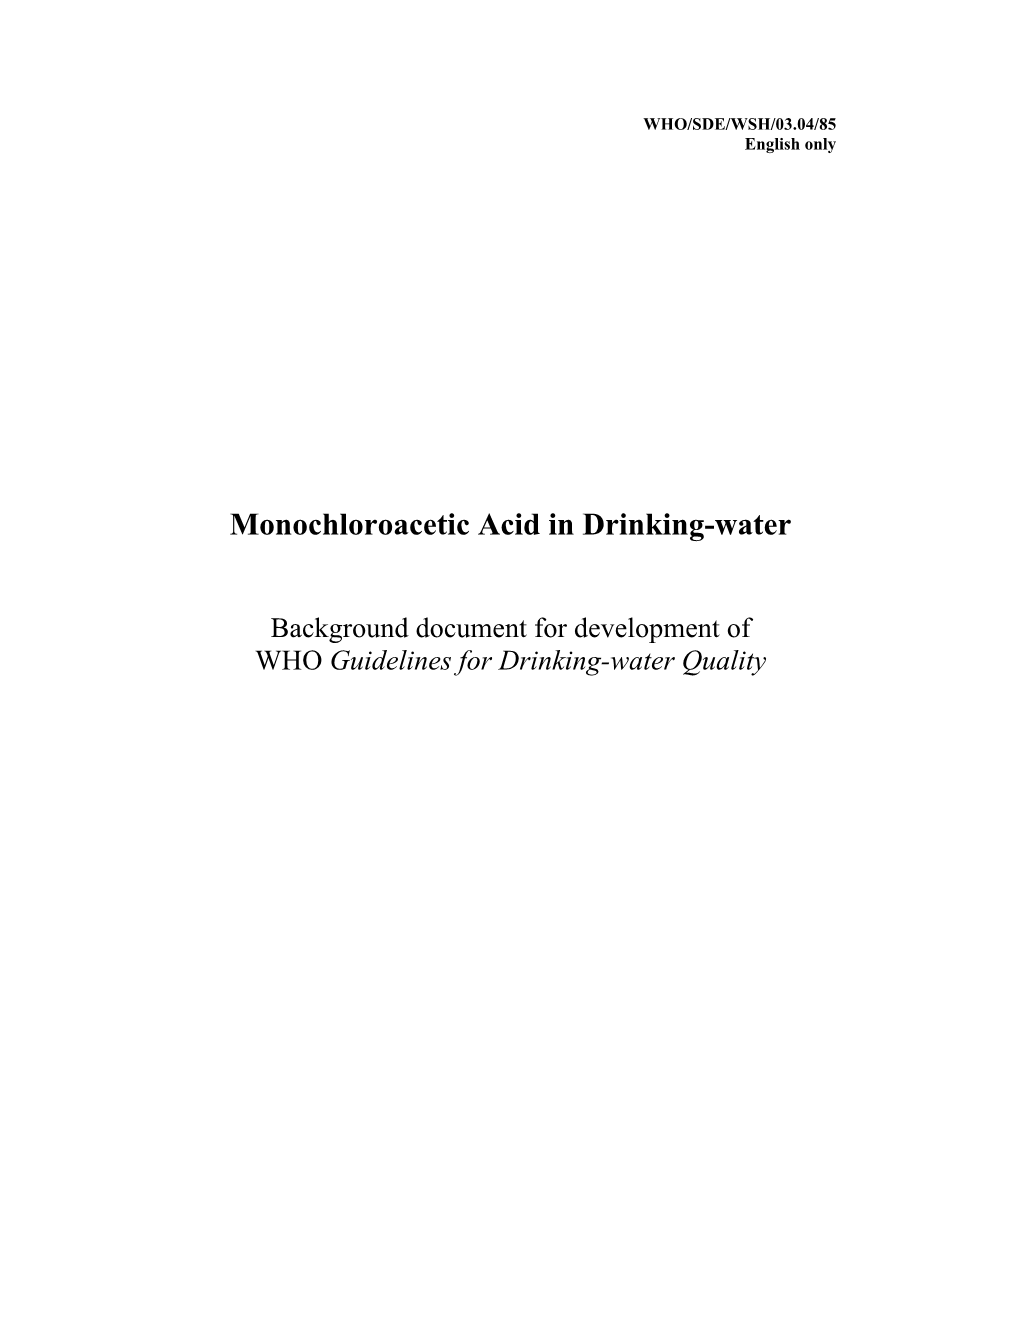 Monochloroacetic Acid in Drinking-Water